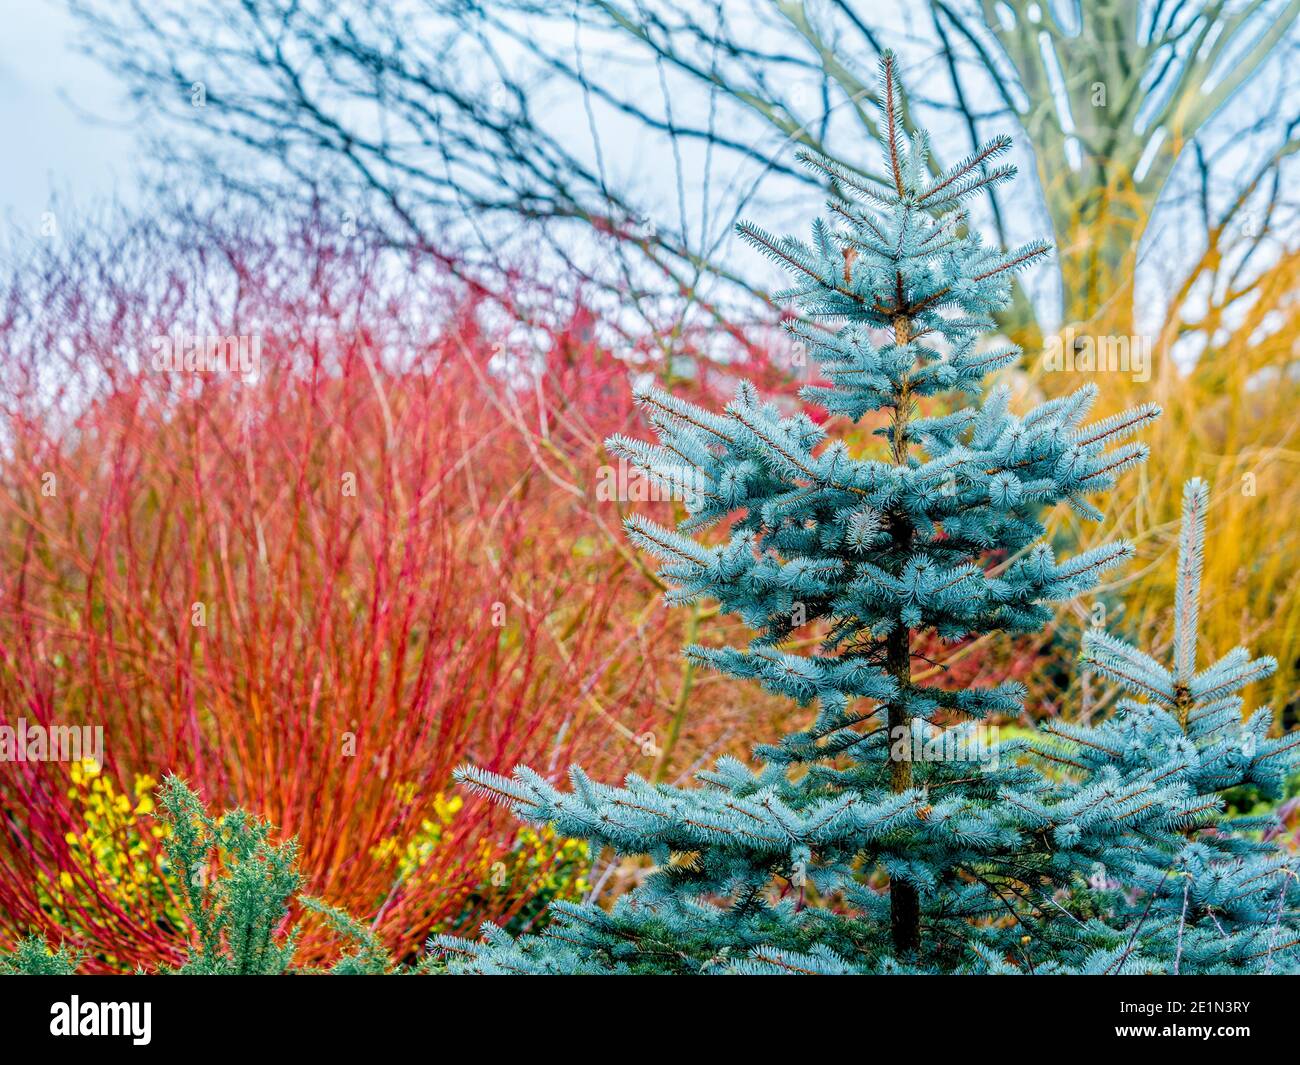 Blaugrünes Laub einer Tanne mit bunten Stielen von Cornas Alba und Salix Alba im Hintergrund. Bereitstellung von Wintergartenfarbe. Stockfoto